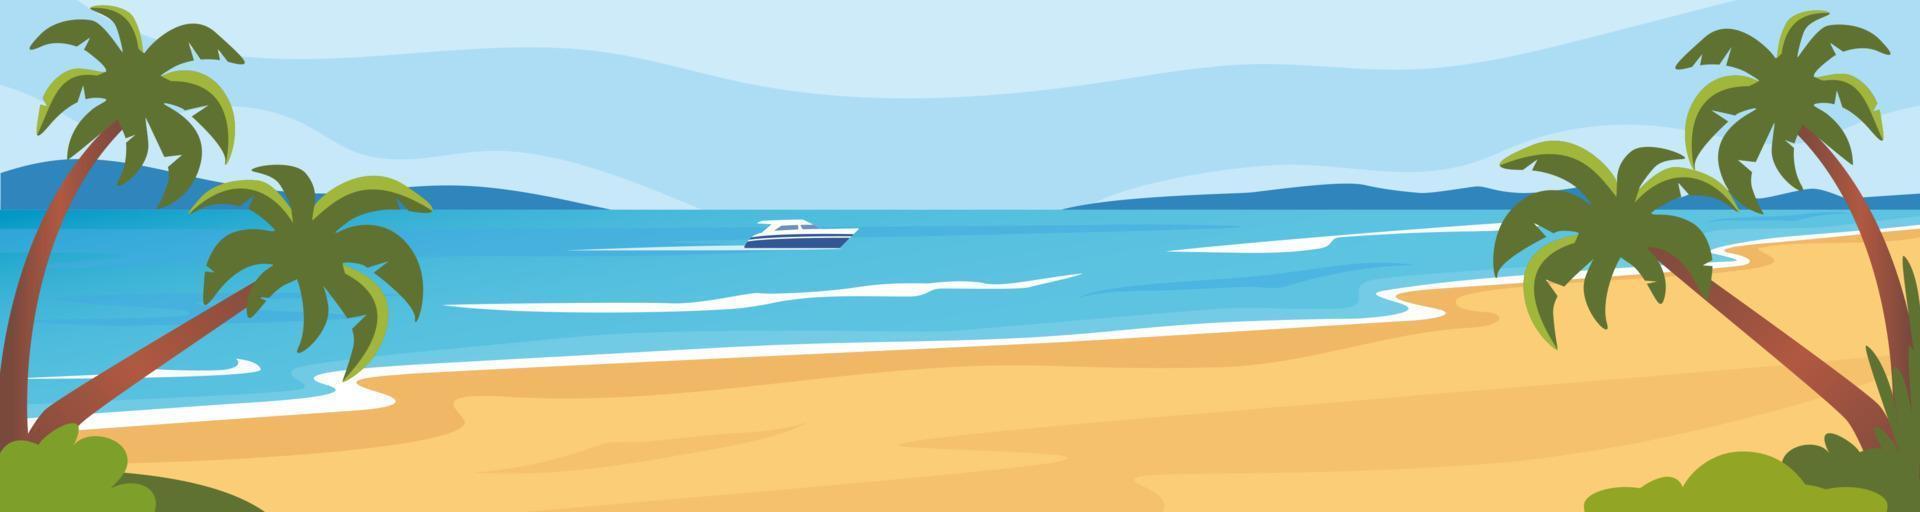 Strandlandschaft mit Meer und Palmen, Sommerhintergrund. die Küste, Berge am Horizont, ein Boot, das auf dem Meer segelt. Vektor-Illustration. vektor